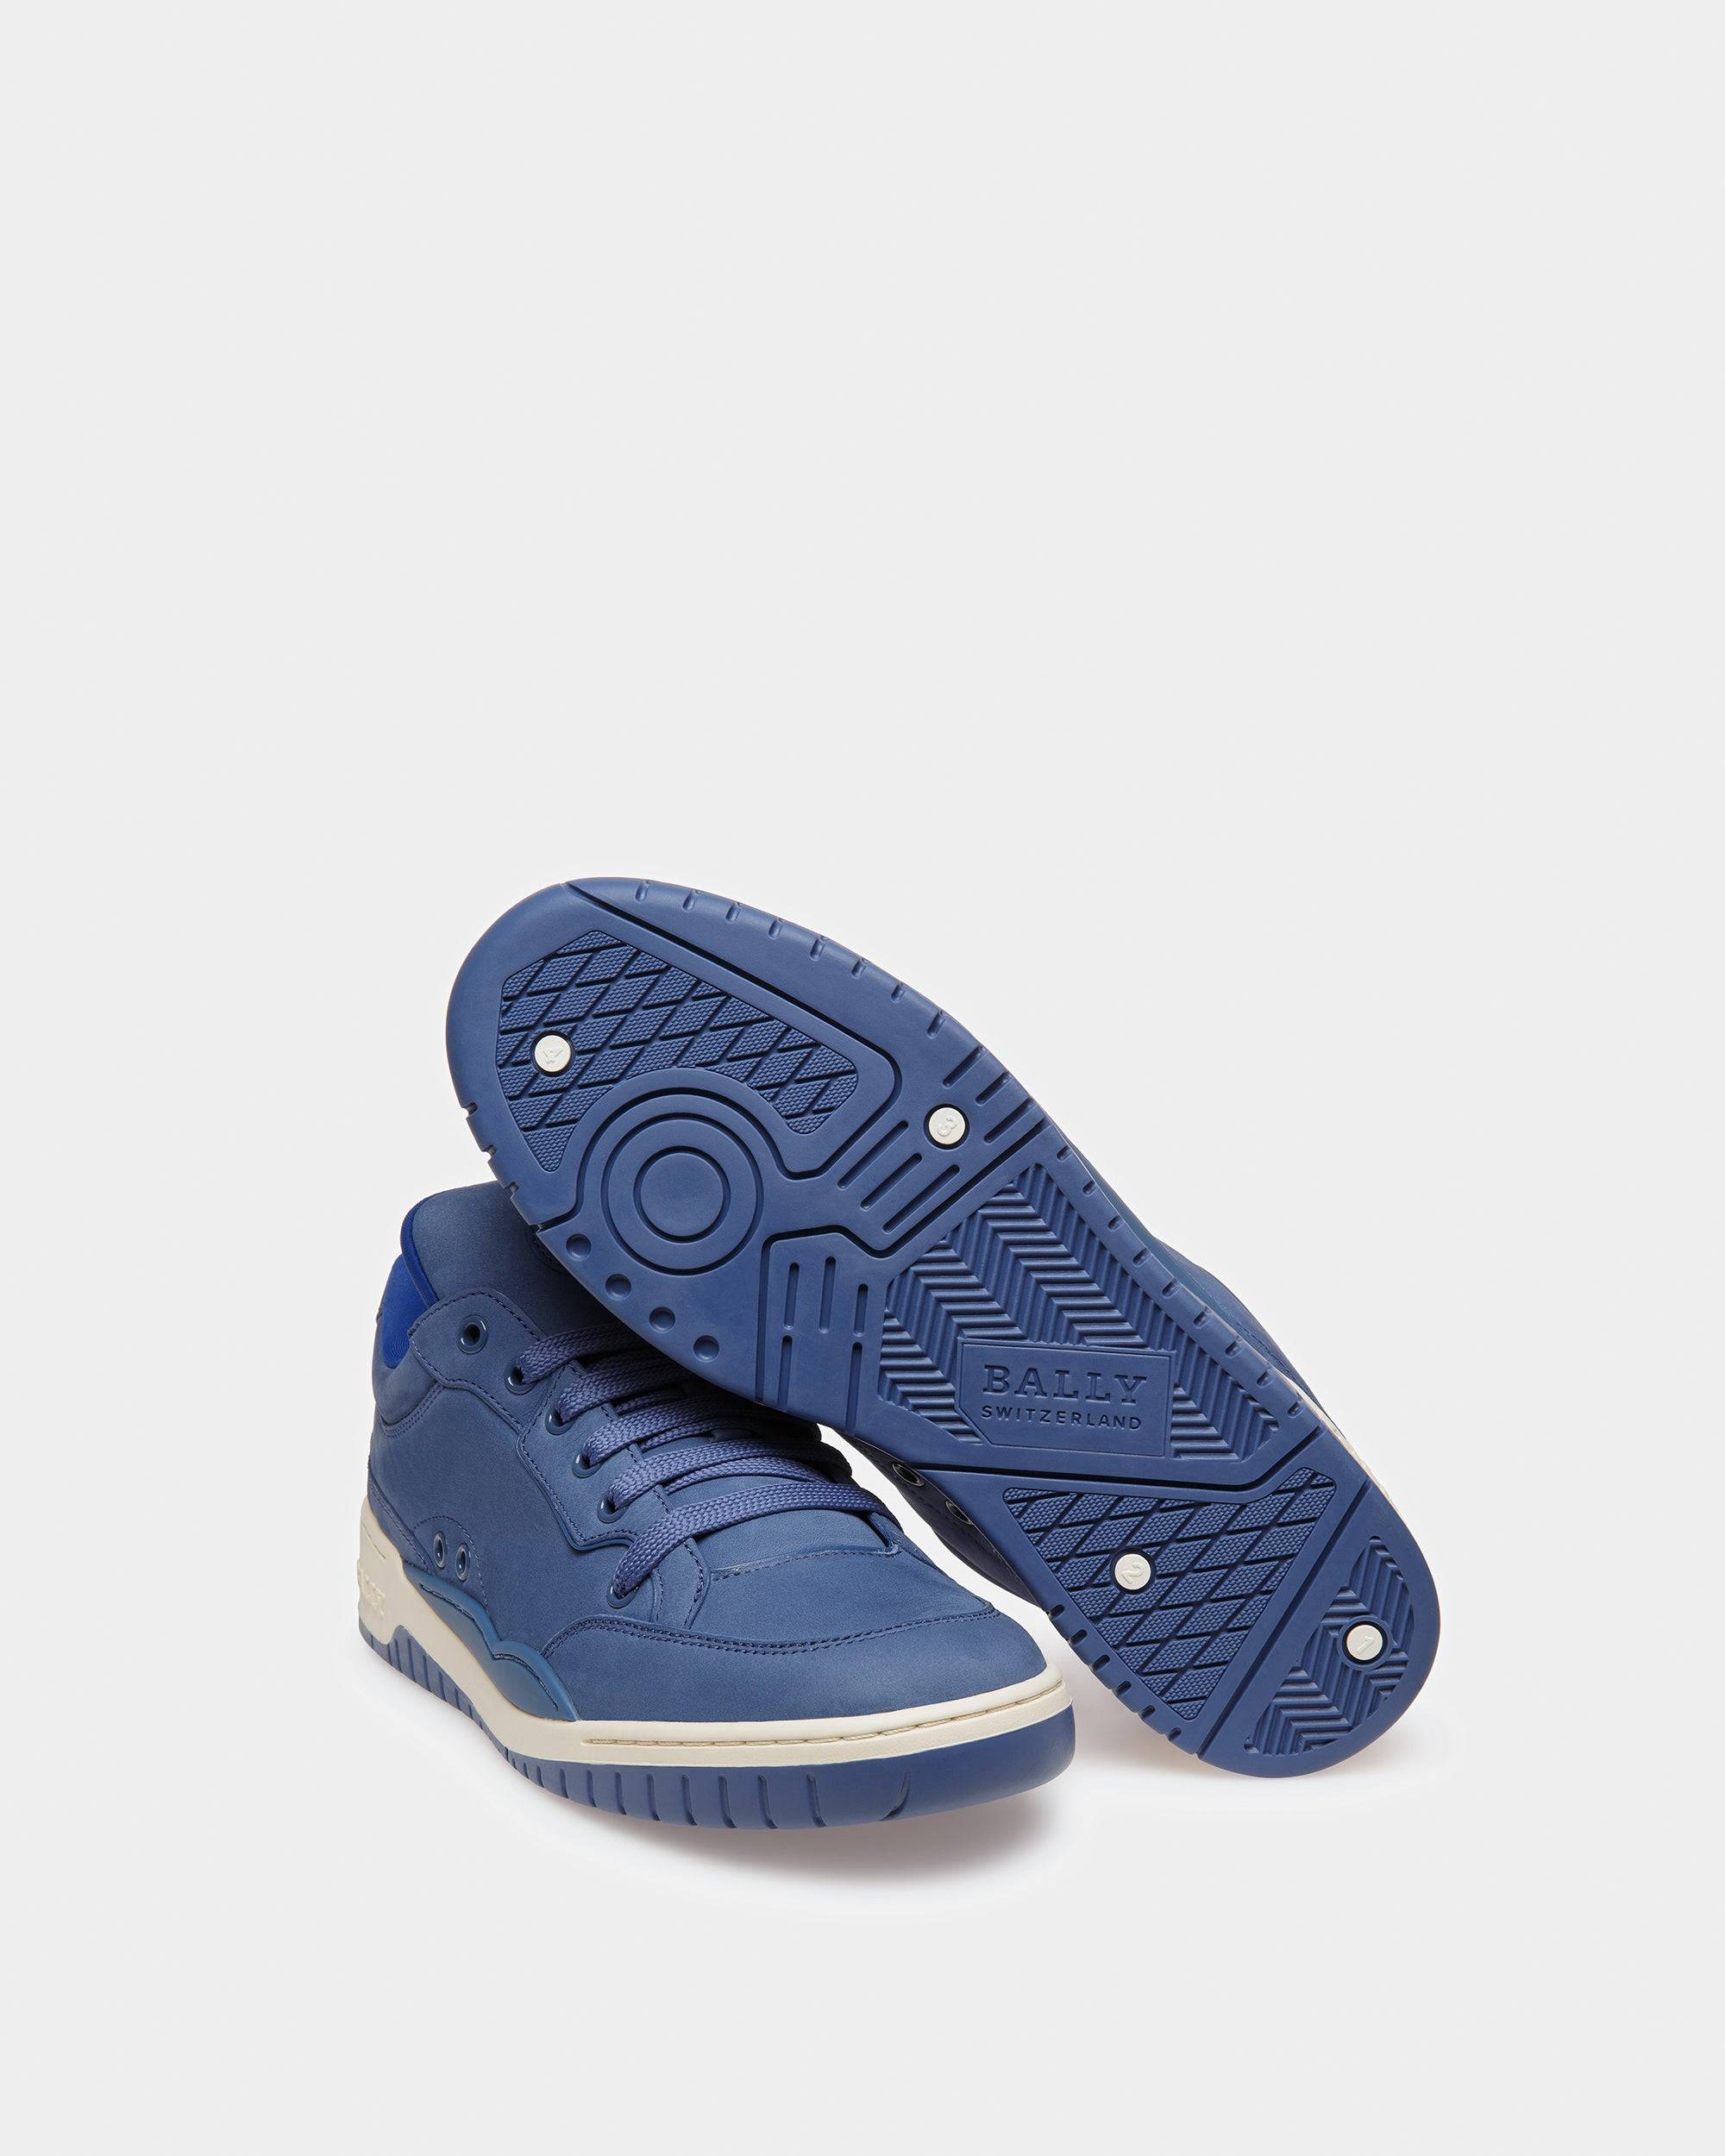 Kiro Sneaker In Pelle Blu Elettrico - Bally - 05